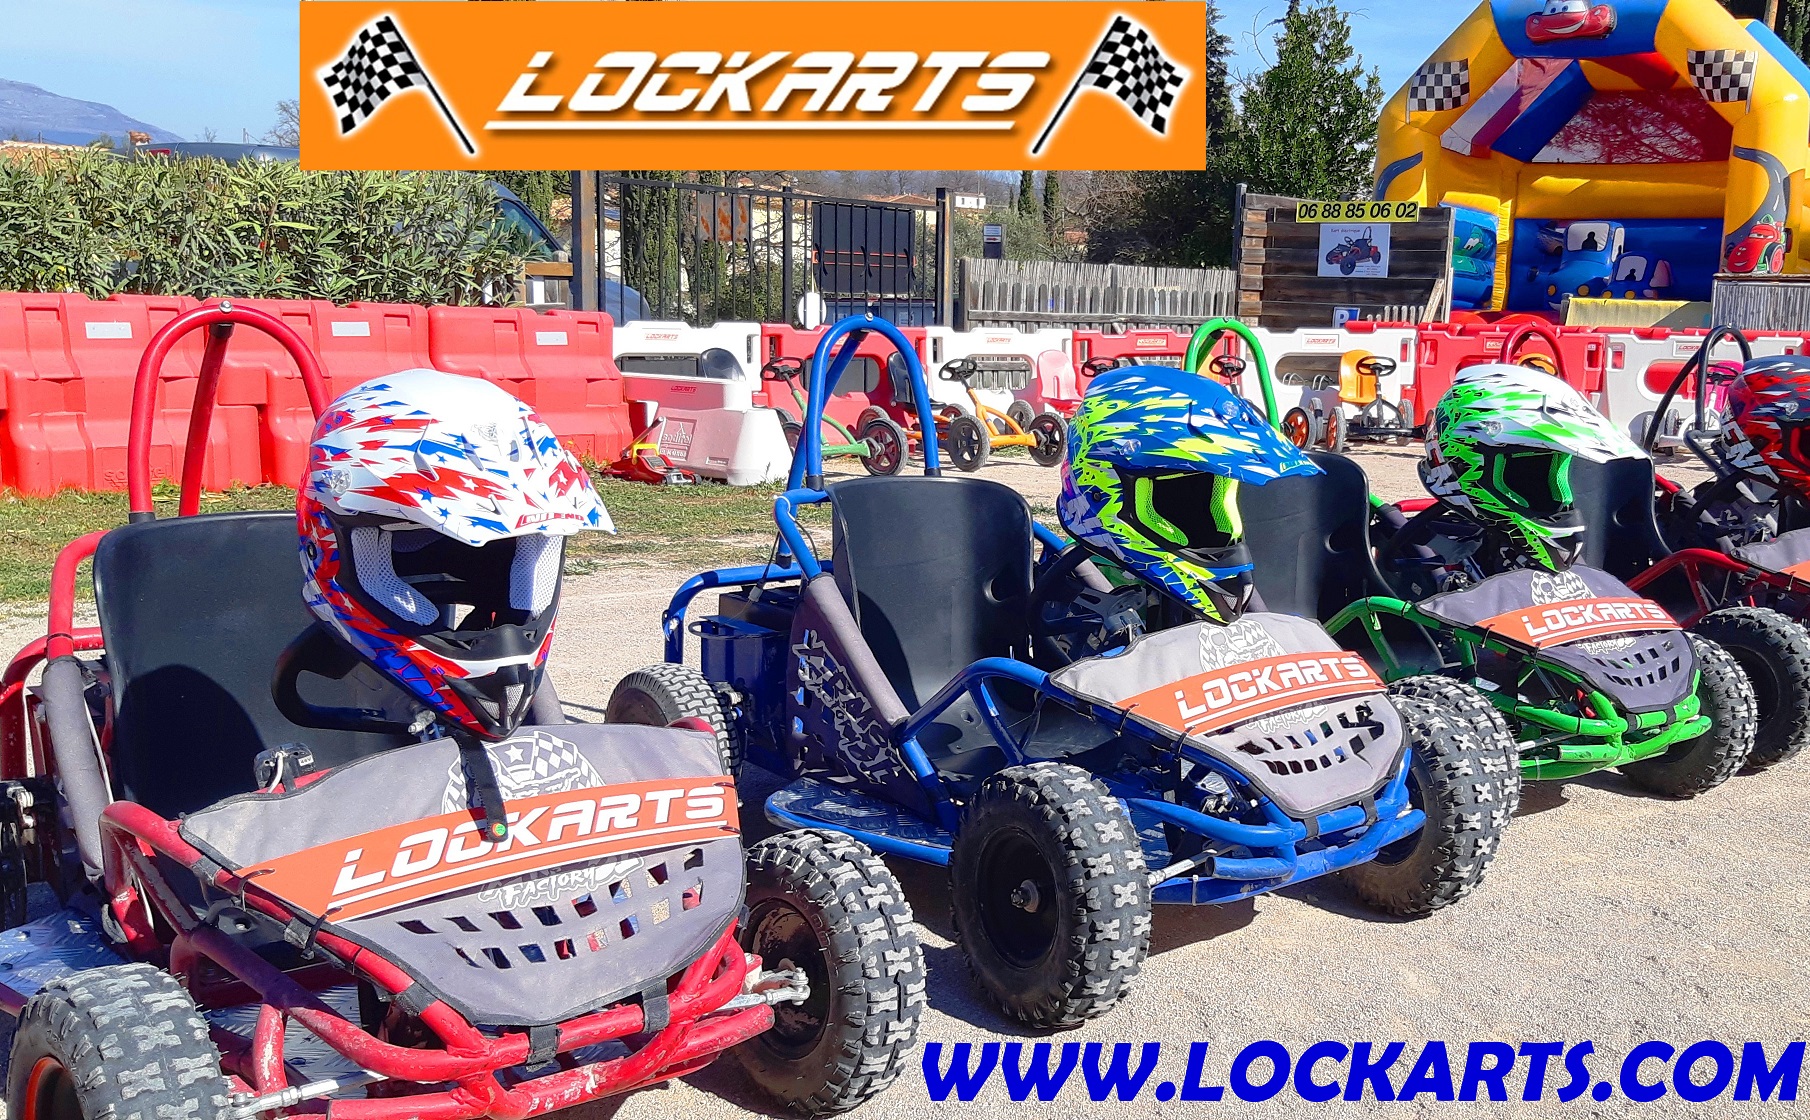 Loc'Karts à Montauroux : circuit de karting en famille